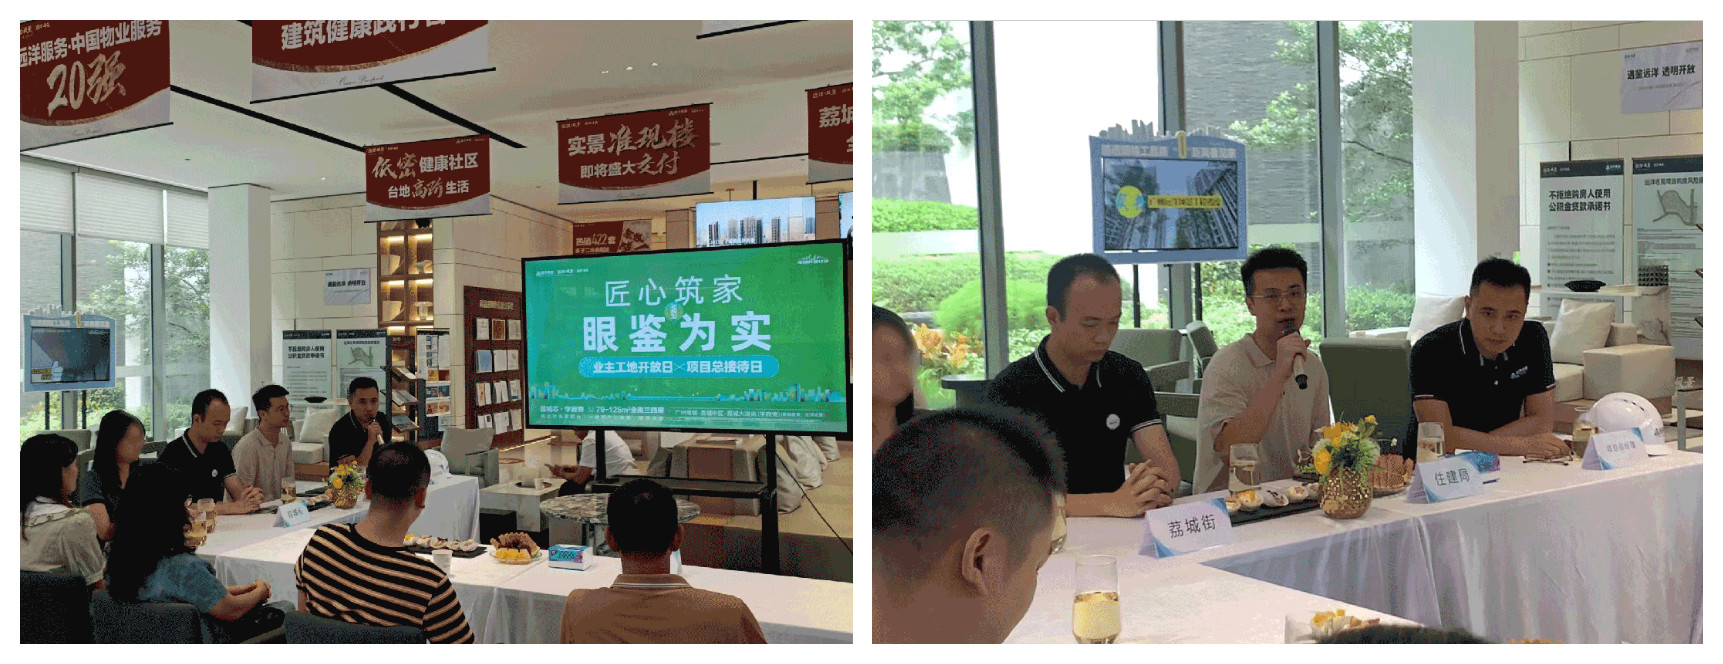 远洋集团广州项目成功举办工地开放日活动